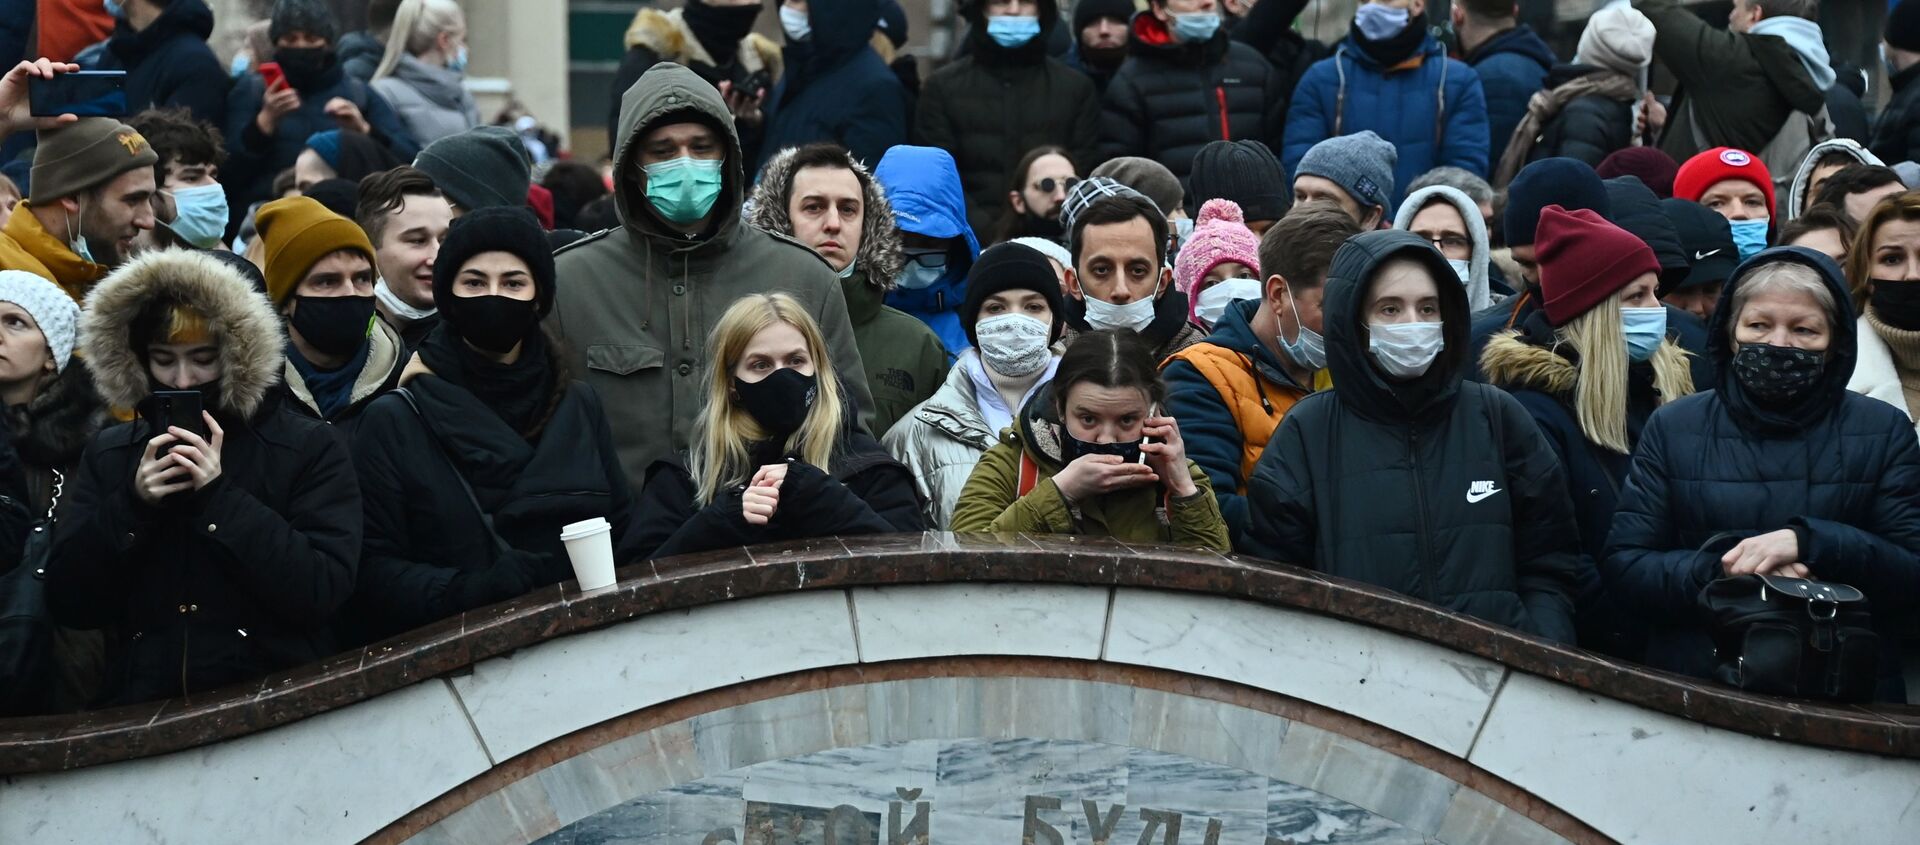 Участники несанкционированной акции сторонников Алексея Навального на Пушкинской площади в Москве - Sputnik Узбекистан, 1920, 11.02.2021